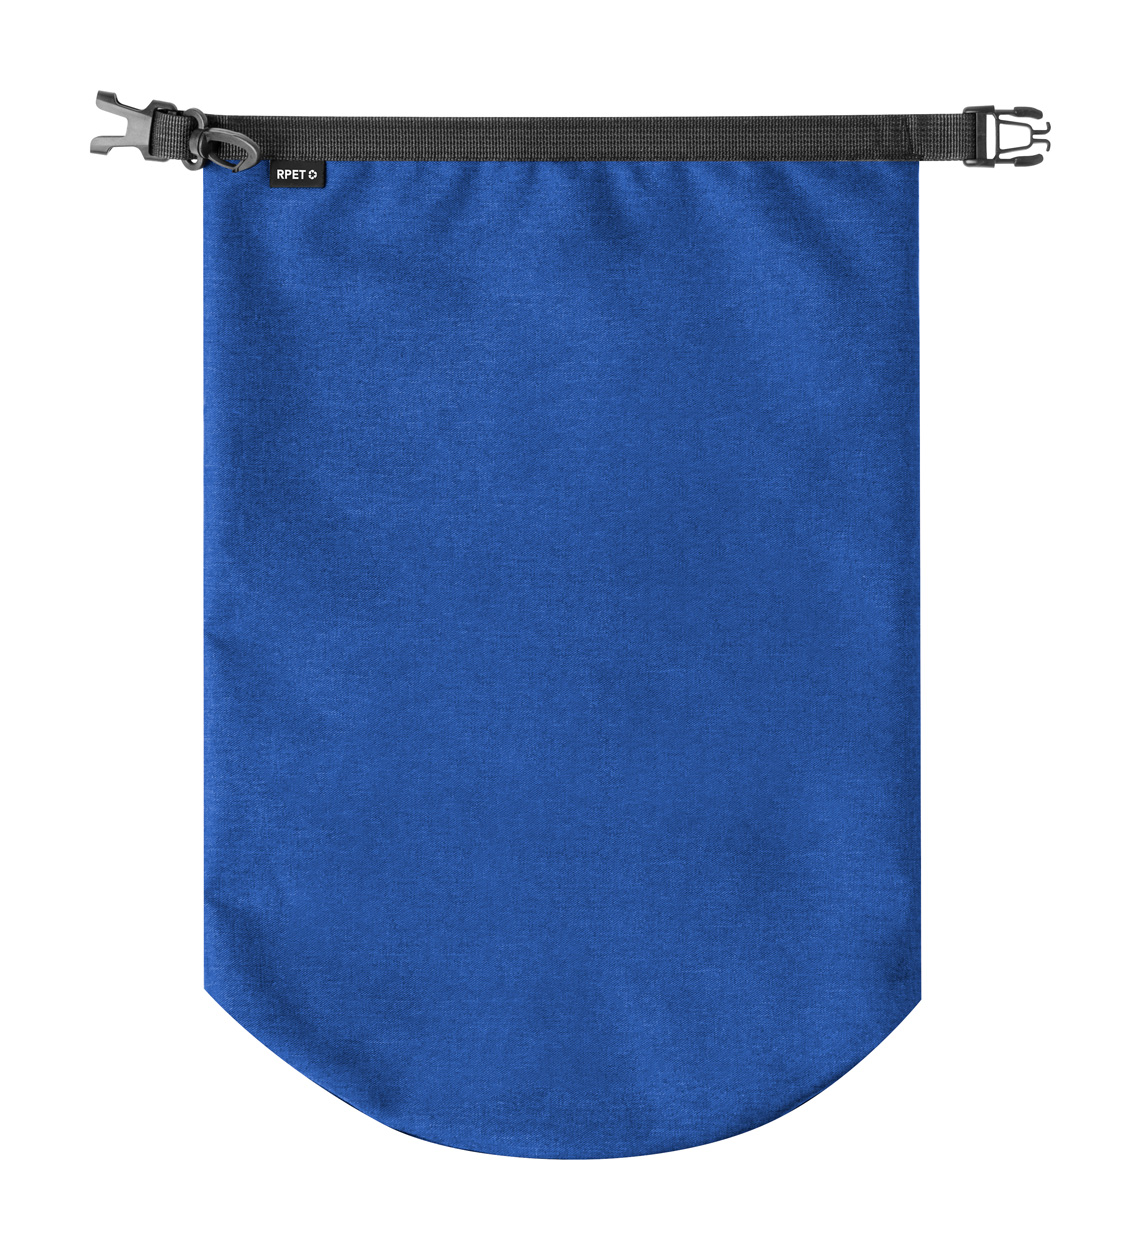 Kasolin RPET boat bag - blue